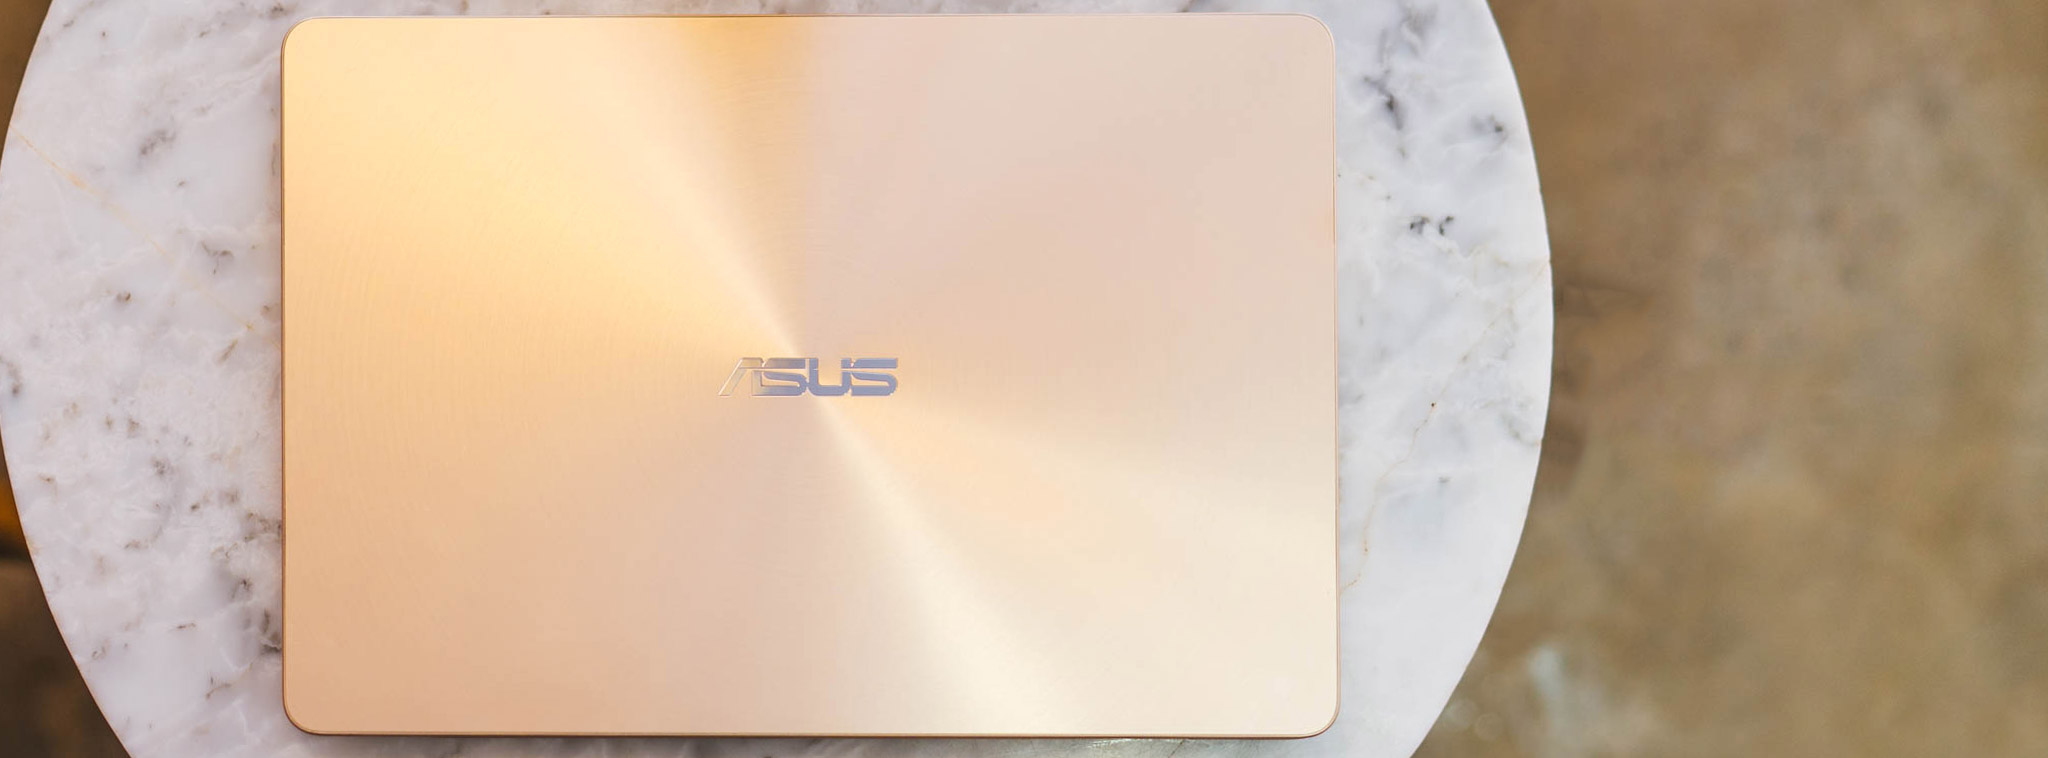 Đánh giá nhanh ASUS Zenbook UX430: Ultrabook dành cho các bạn thích sự thực dụng